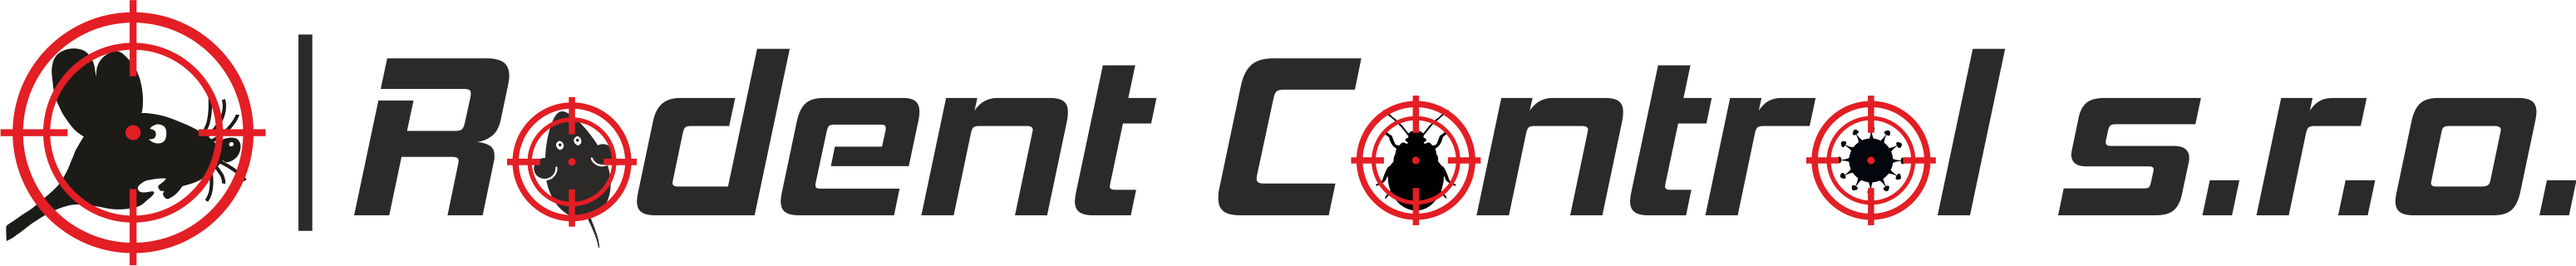 Logo - myš + nápis - horizontální